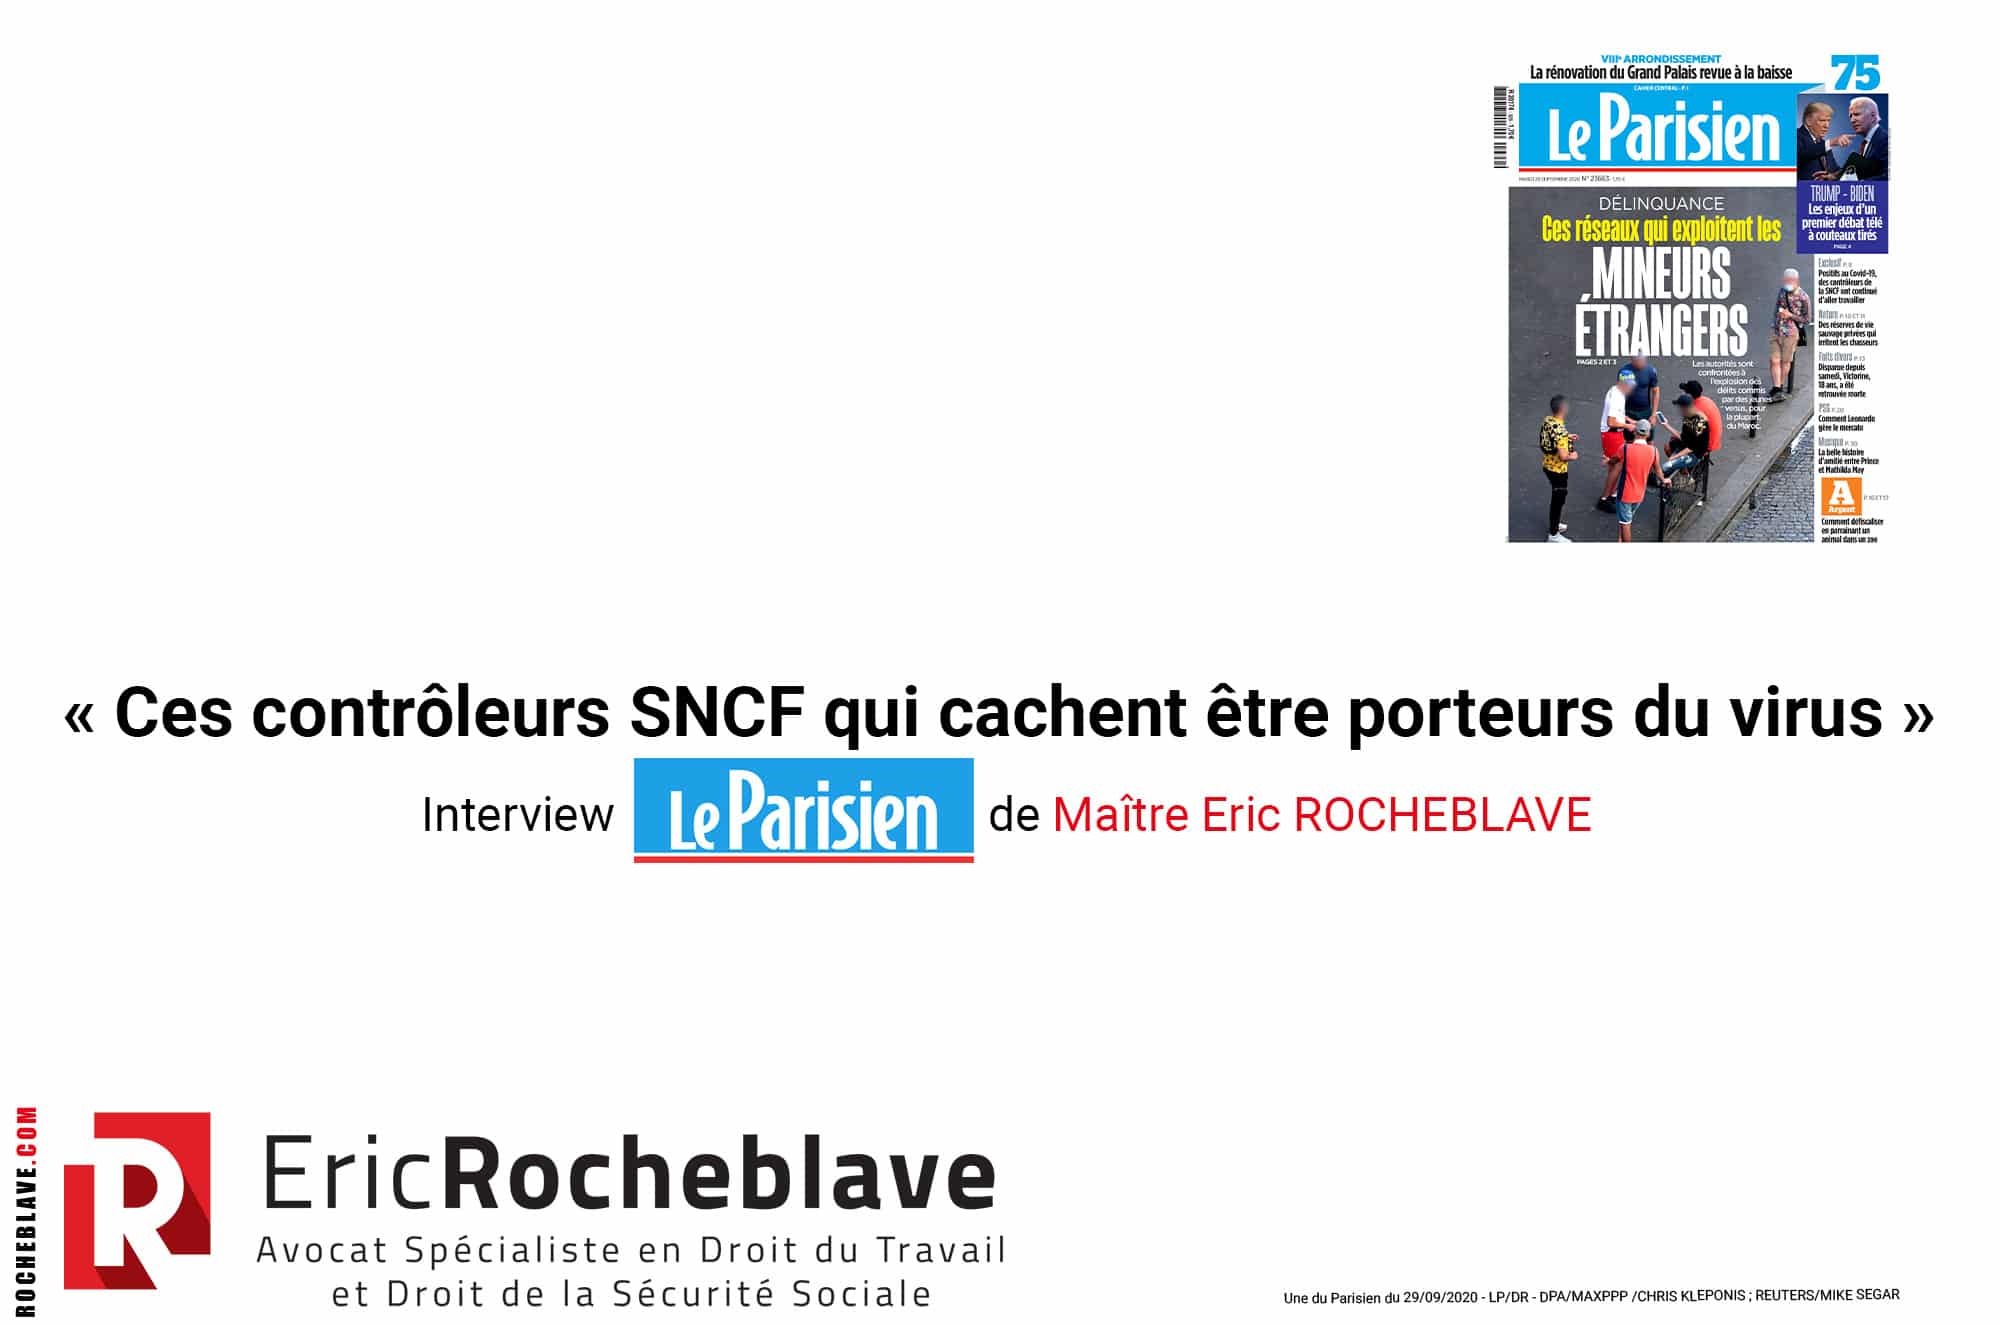 « Ces contrôleurs SNCF qui cachent être porteurs du virus » Interview Le Parisien de Maître Eric ROCHEBLAVE